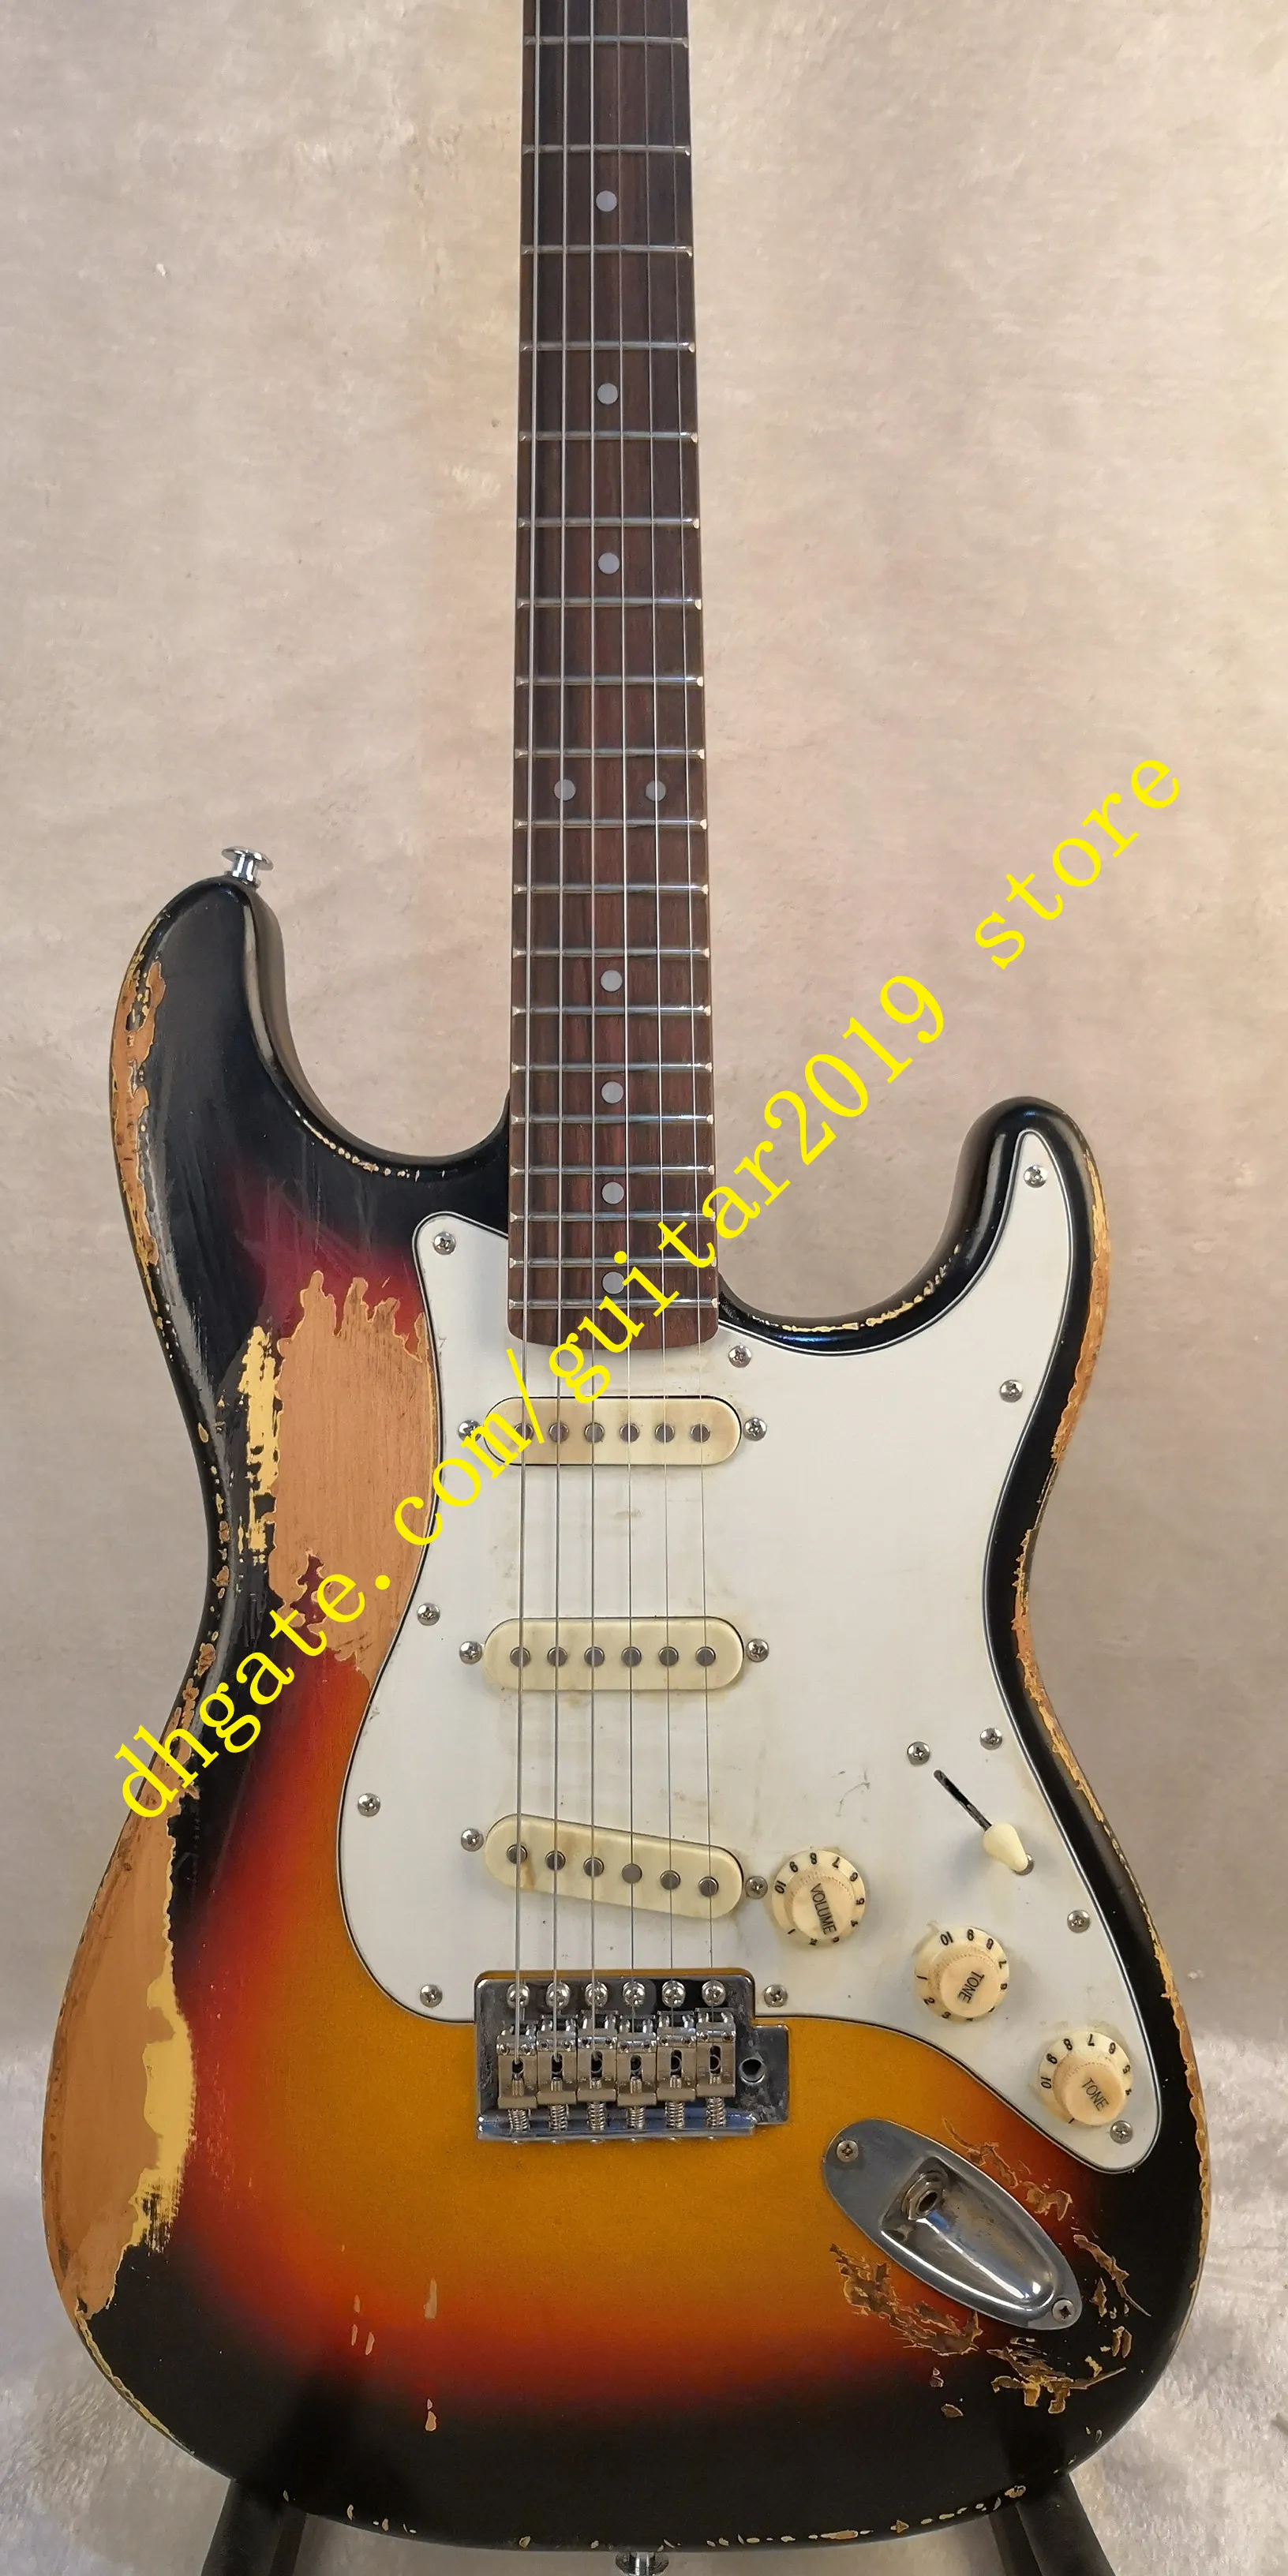 Serie Deluxe Frusante 1962 Sunburst Sunburst Guitarra eléctrica de reliquia pesada en stock